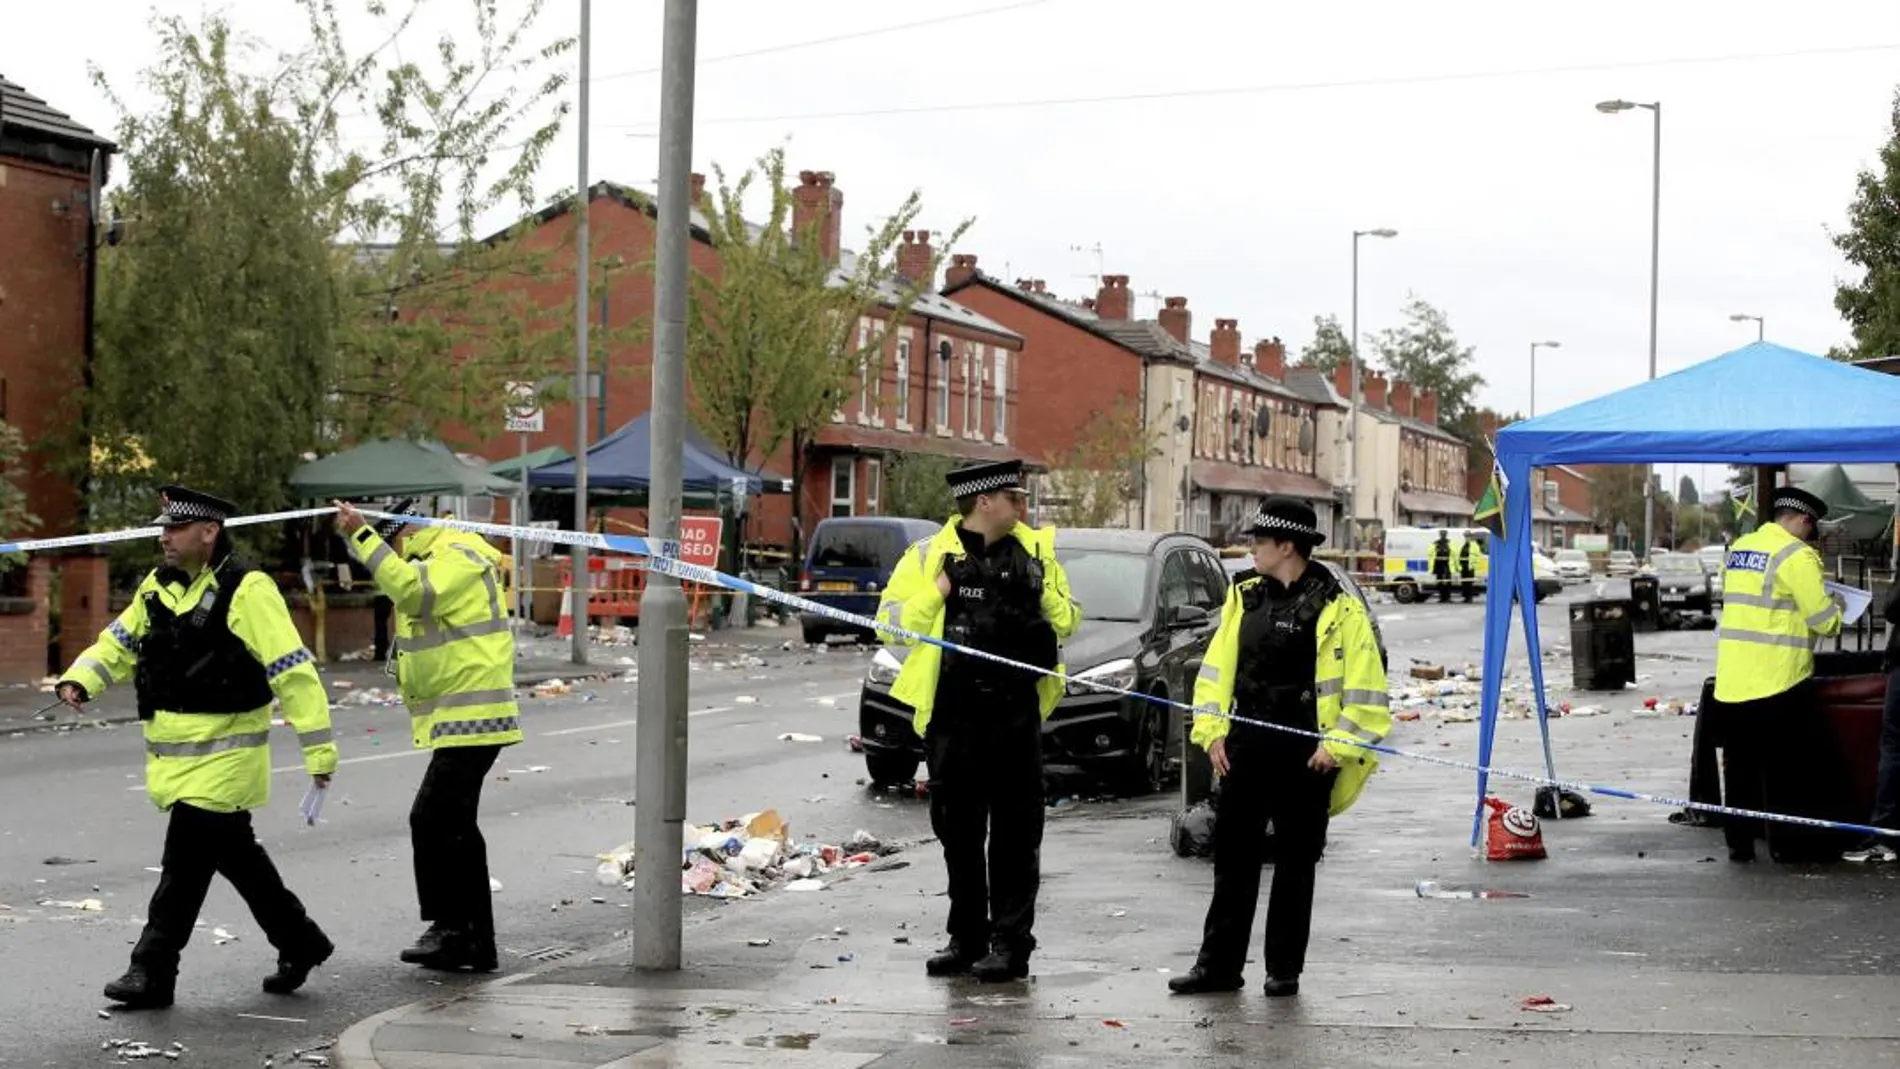 Agentes de la Policía británica inspeccionan el lugar donde se produjo el tiroteo. Foto: Ap